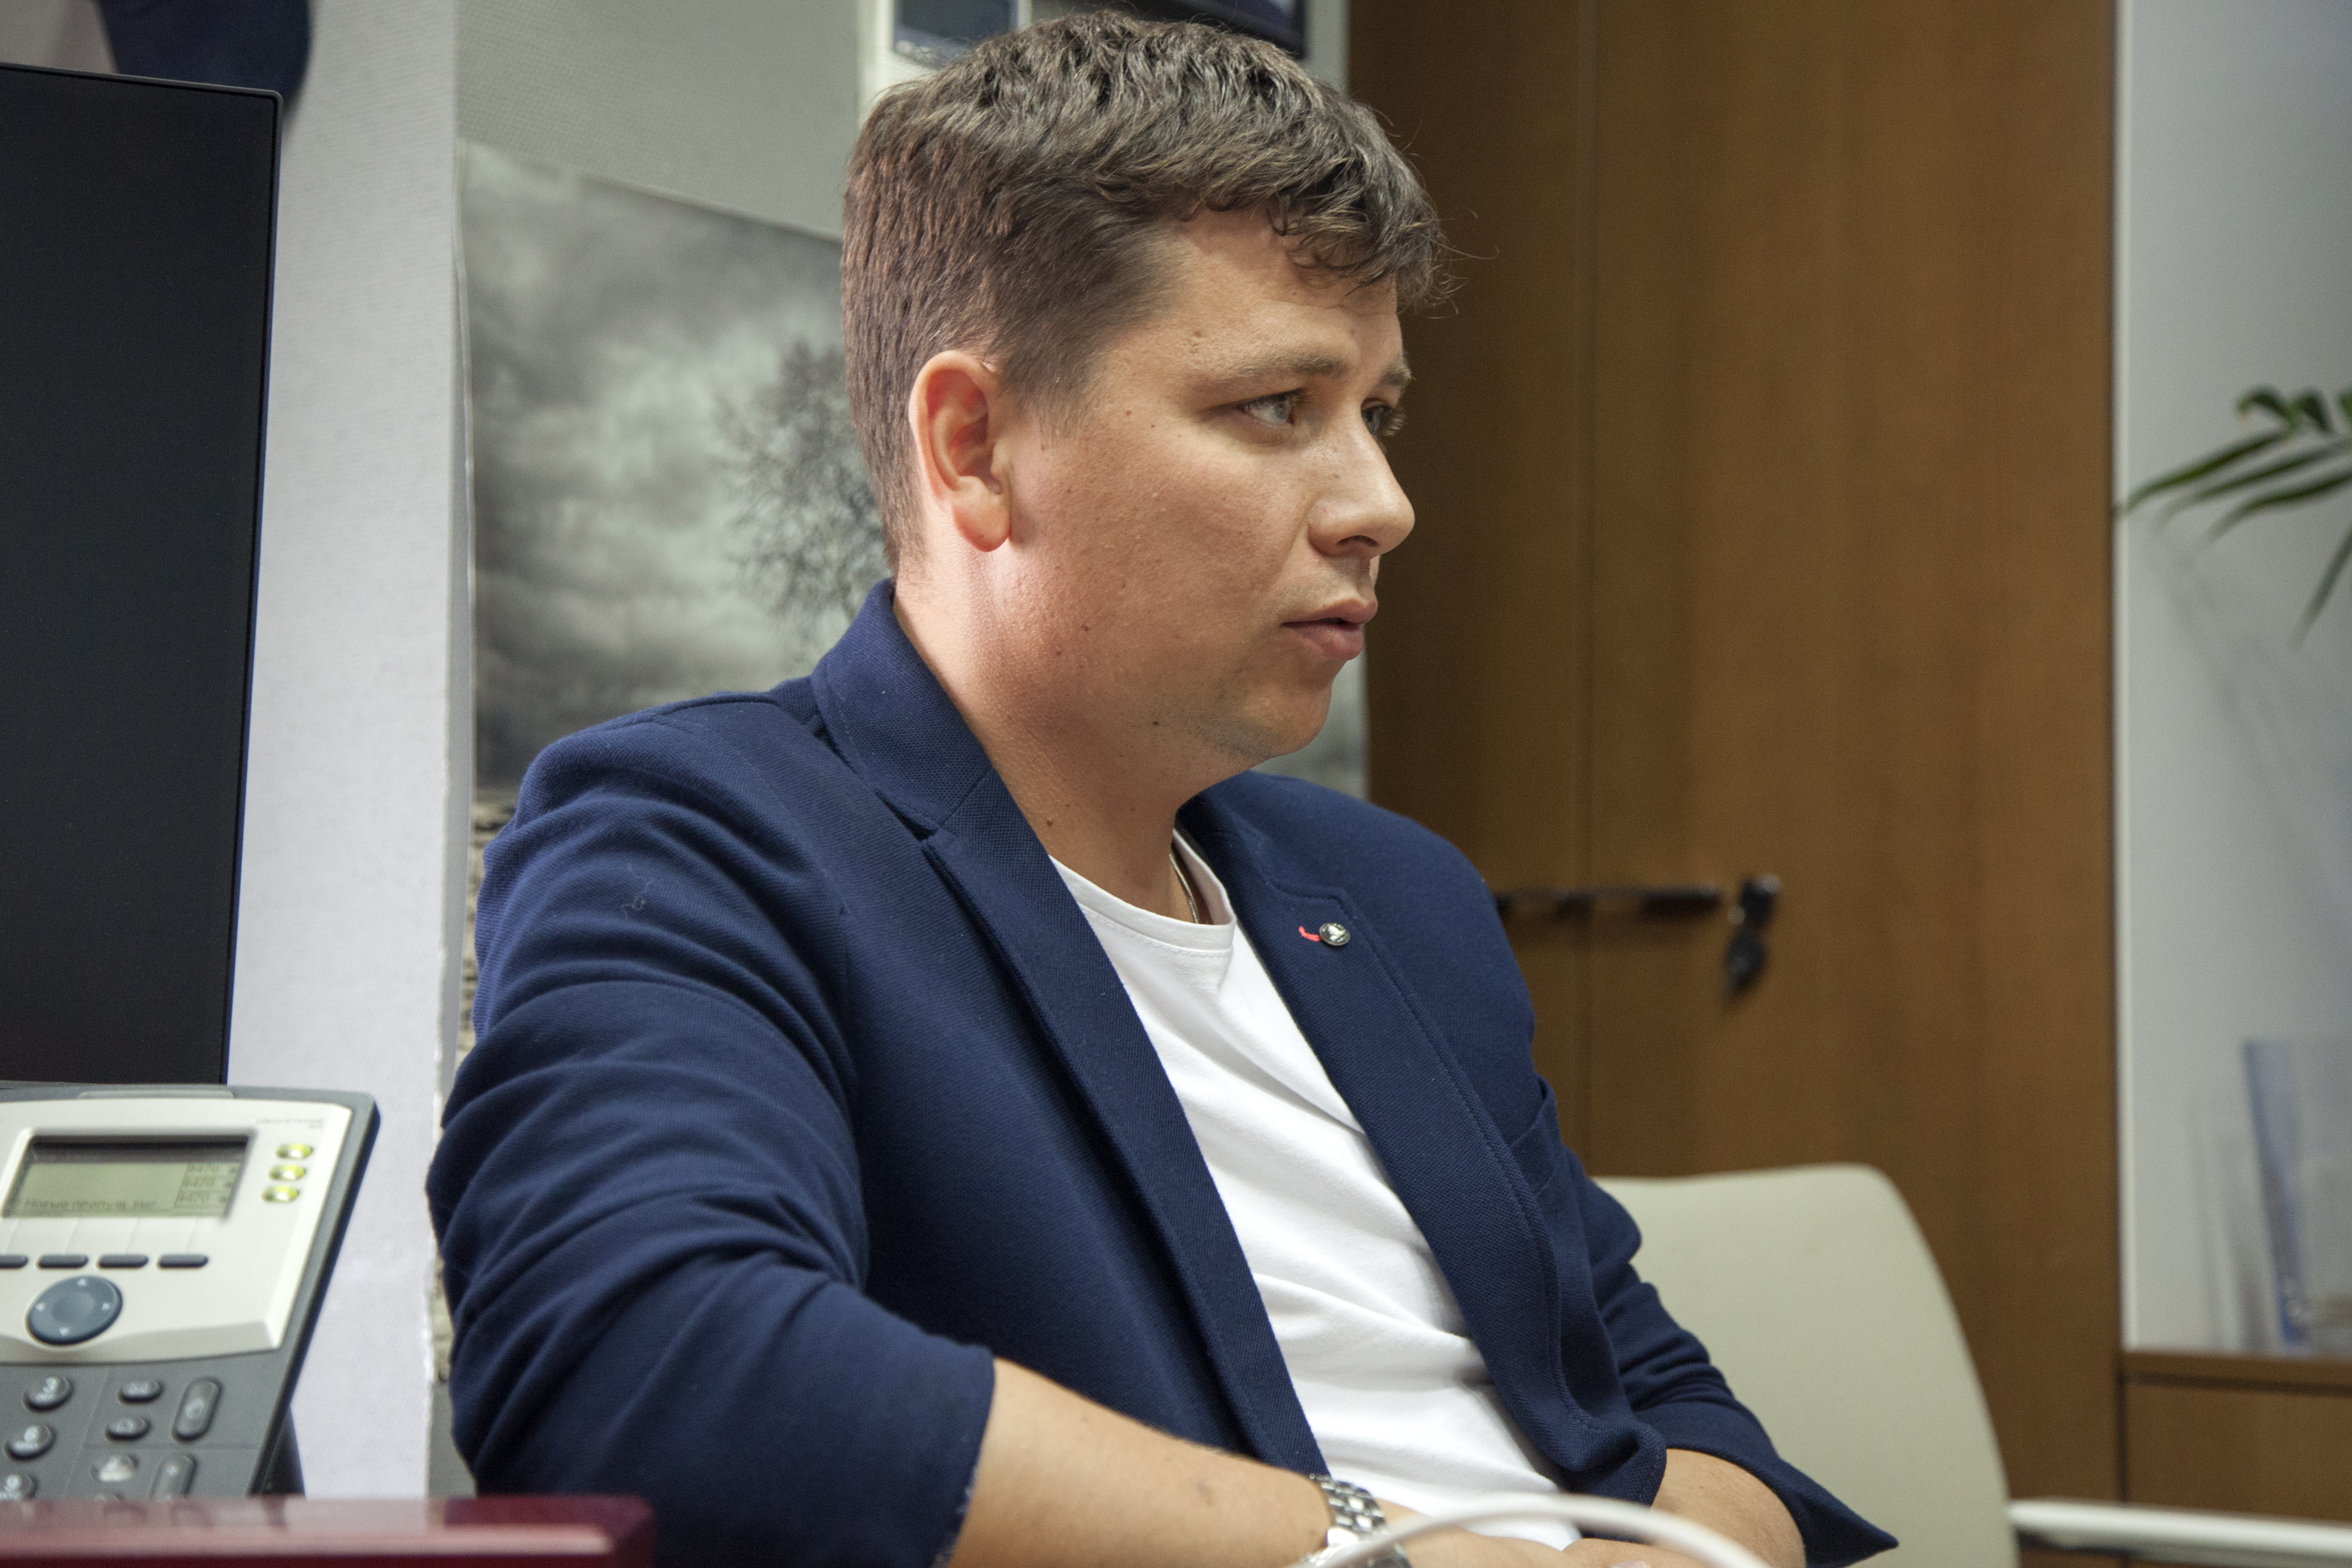 Максим Кривицький ставить завдання для групи «1+1 медіа» до 2021 року вийти в нуль і підняти частку до 25%